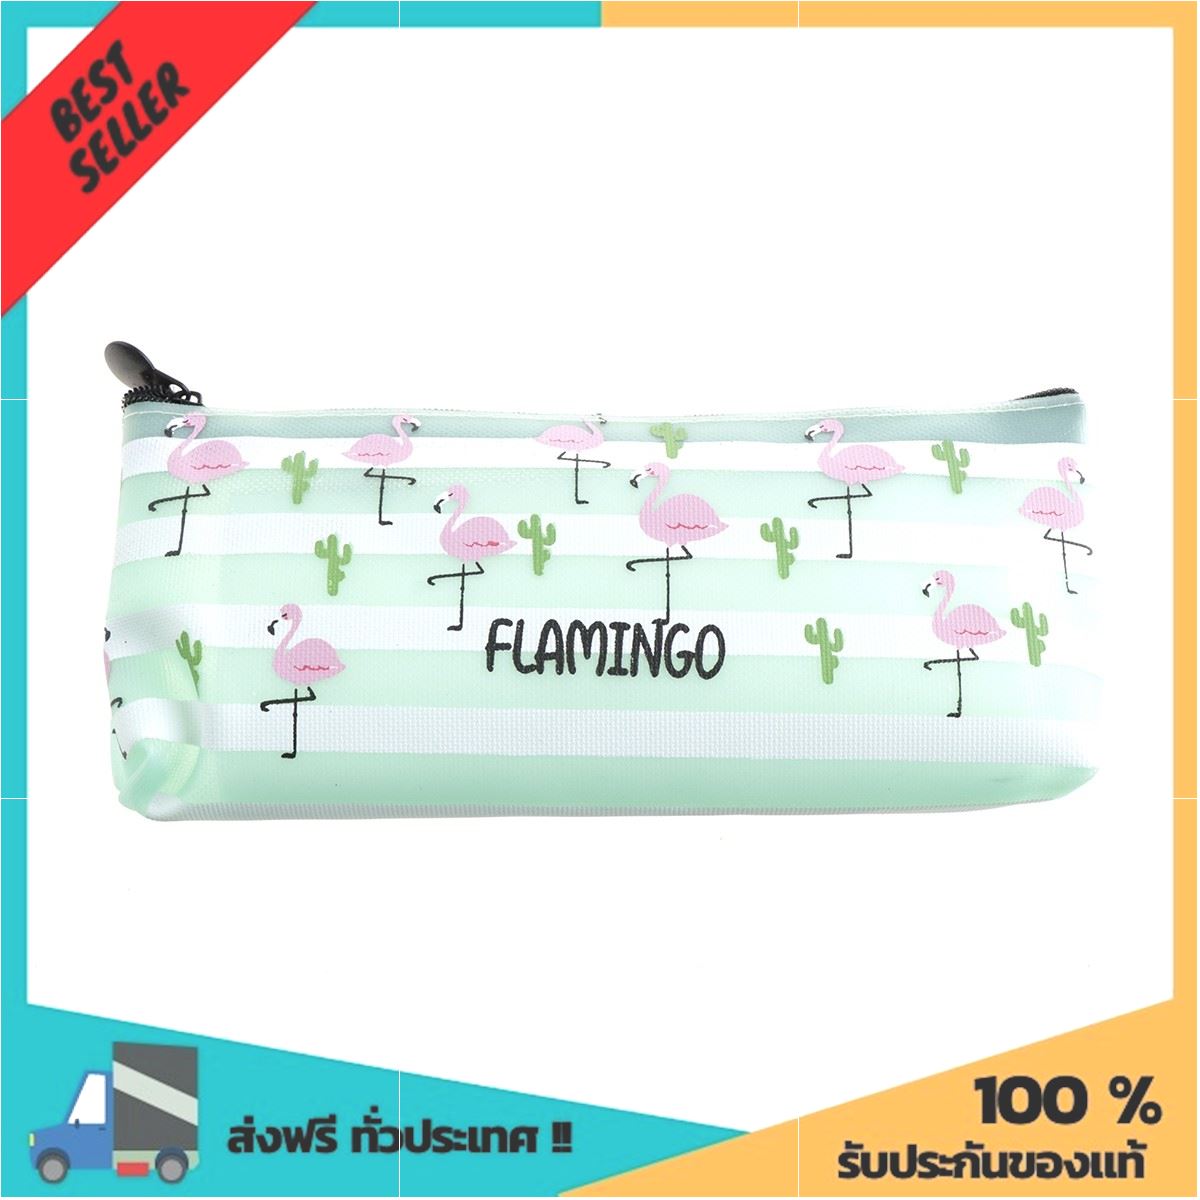 กระเป๋าดินสอพลาสติก 7 นิ้ว รุ่น DMA-577-1 ลาย Flamingo ลดหนักมากๆ